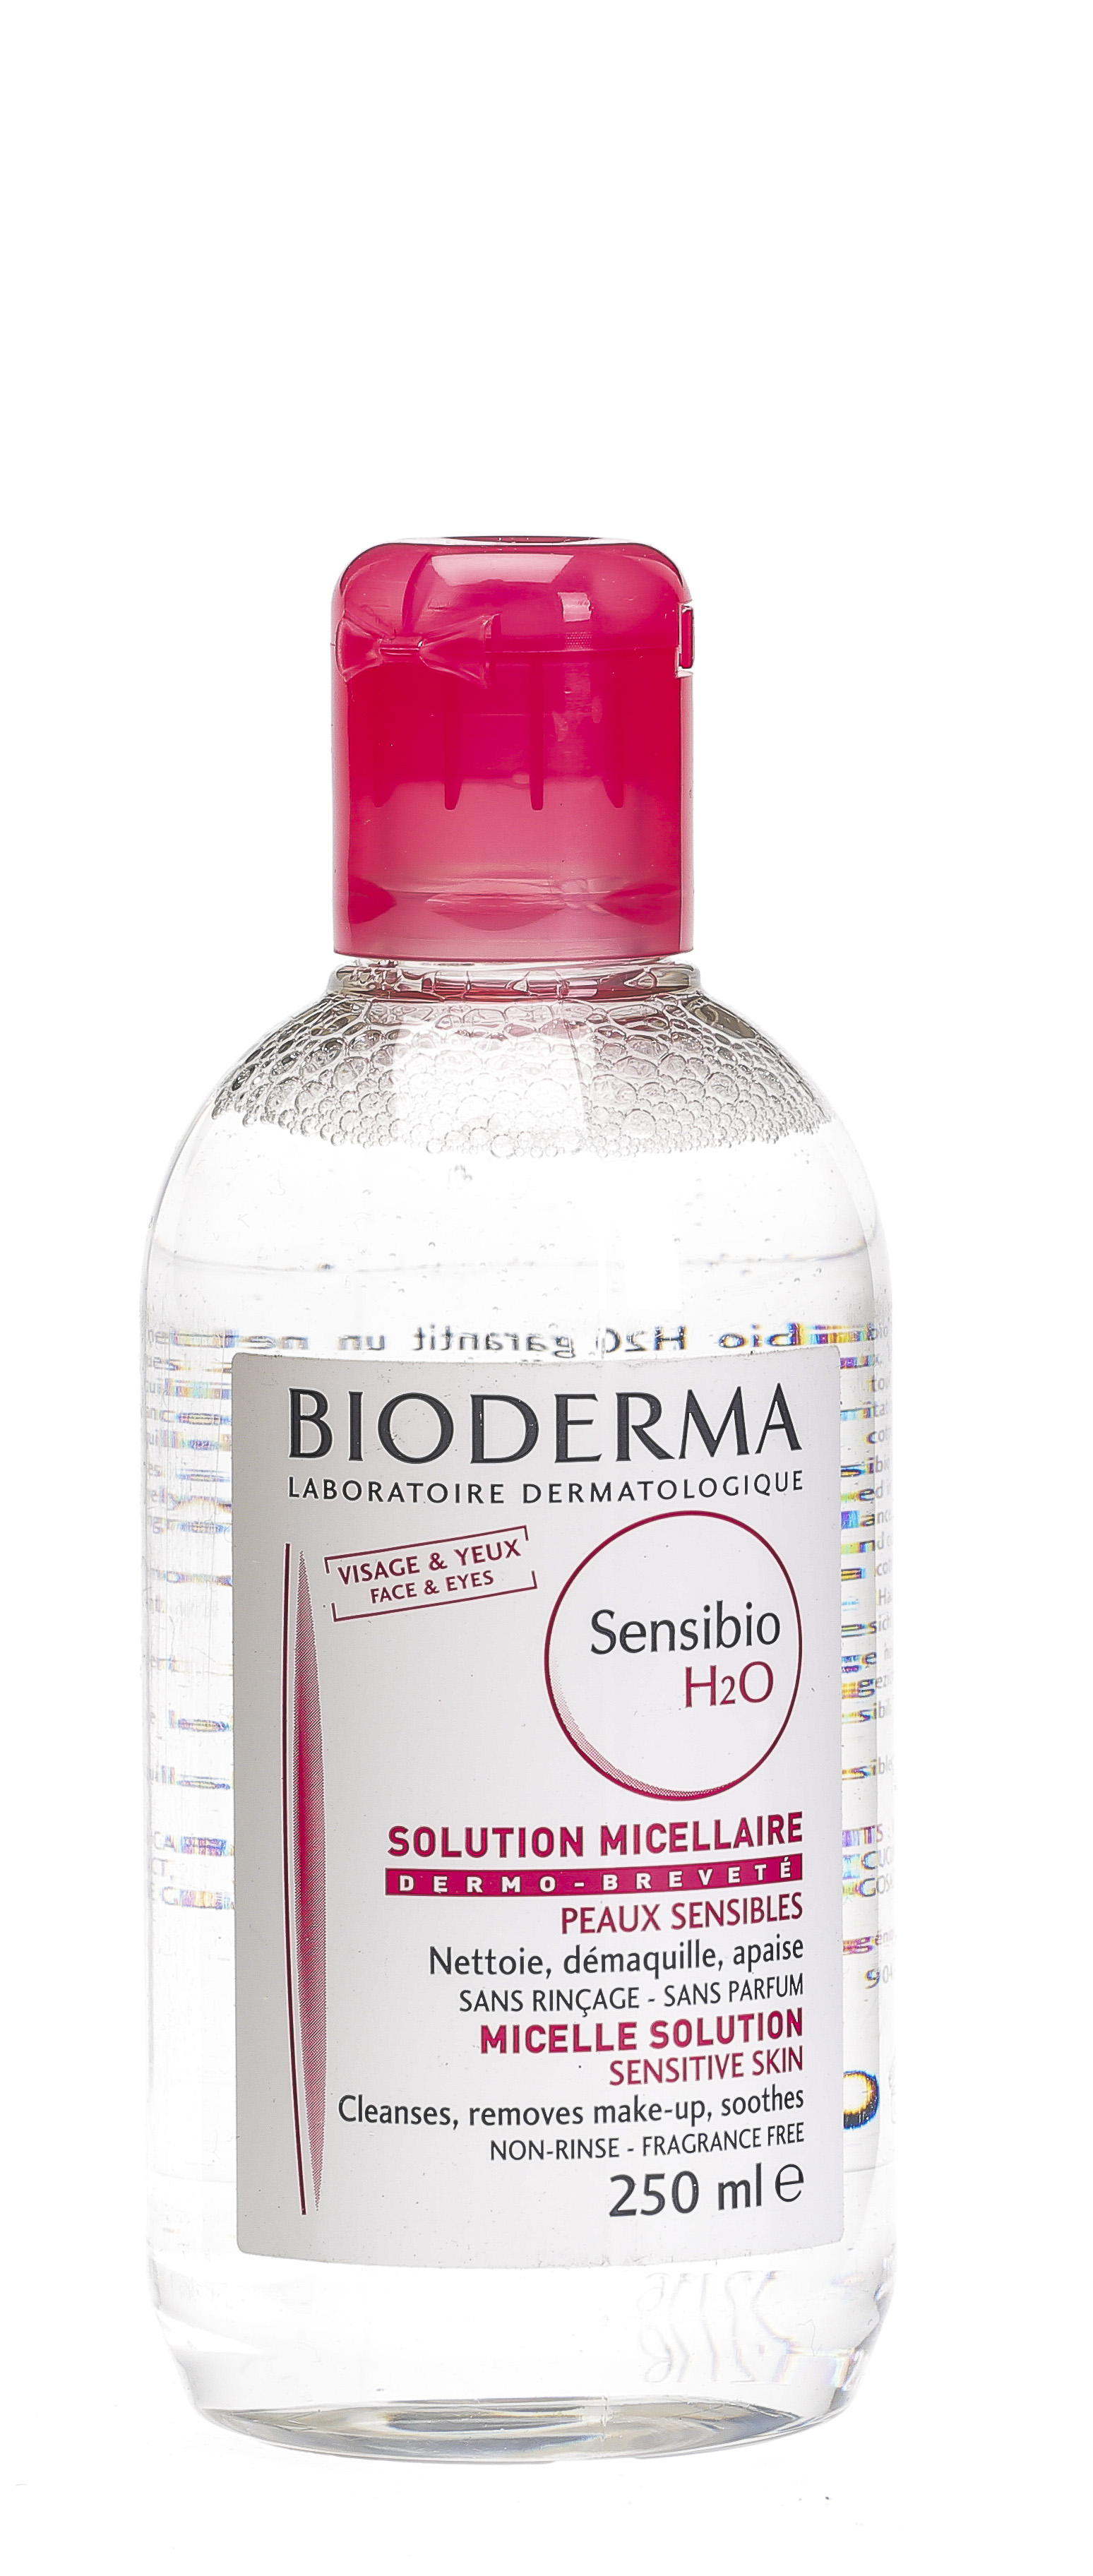 Bioderma Sensibio H2O Make-Up Rimozione Micellare Acqua pelle Sensibile